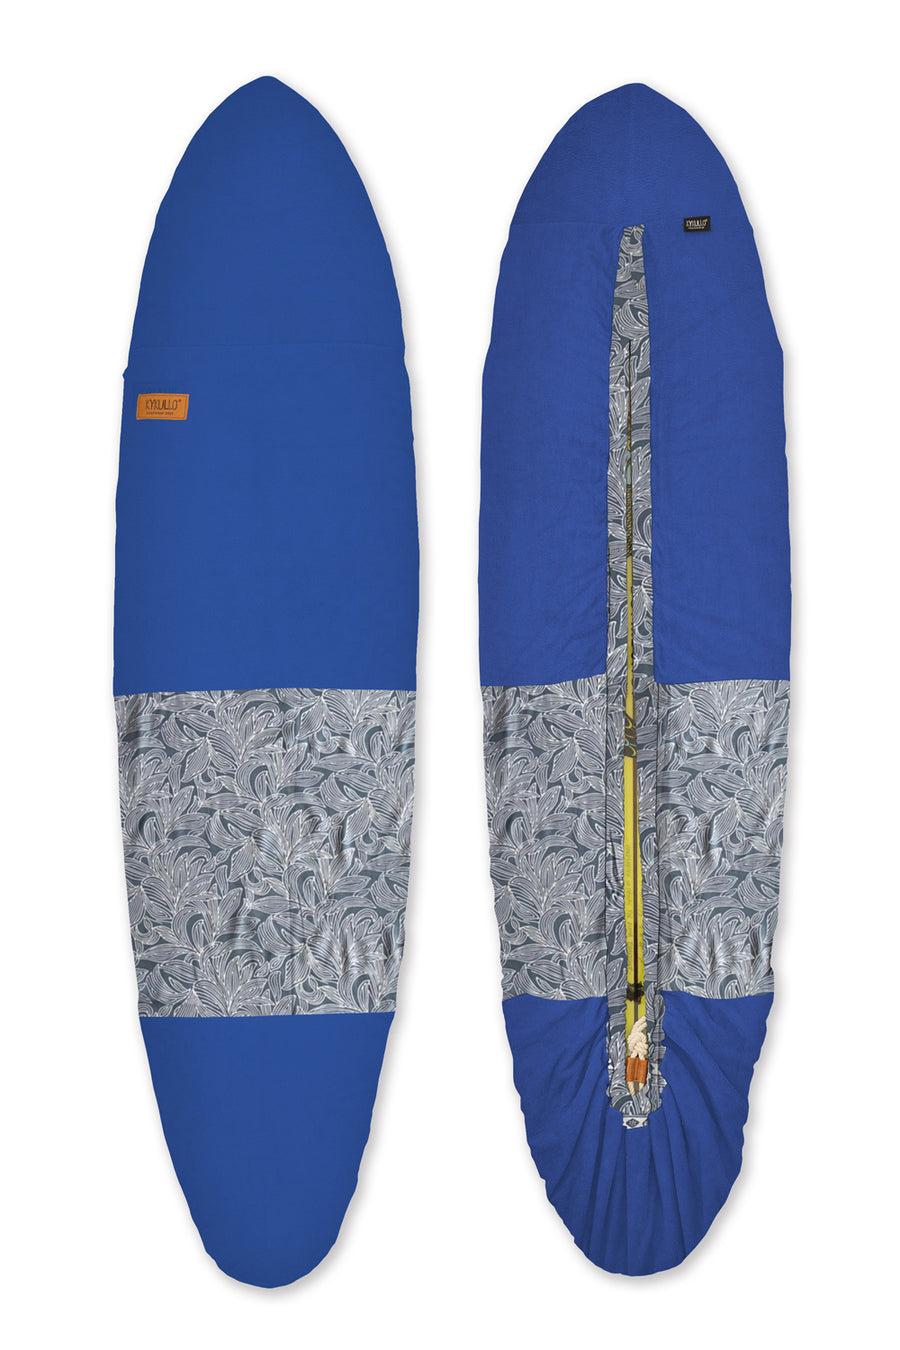 SURFWRAP 7'4 - BLUE